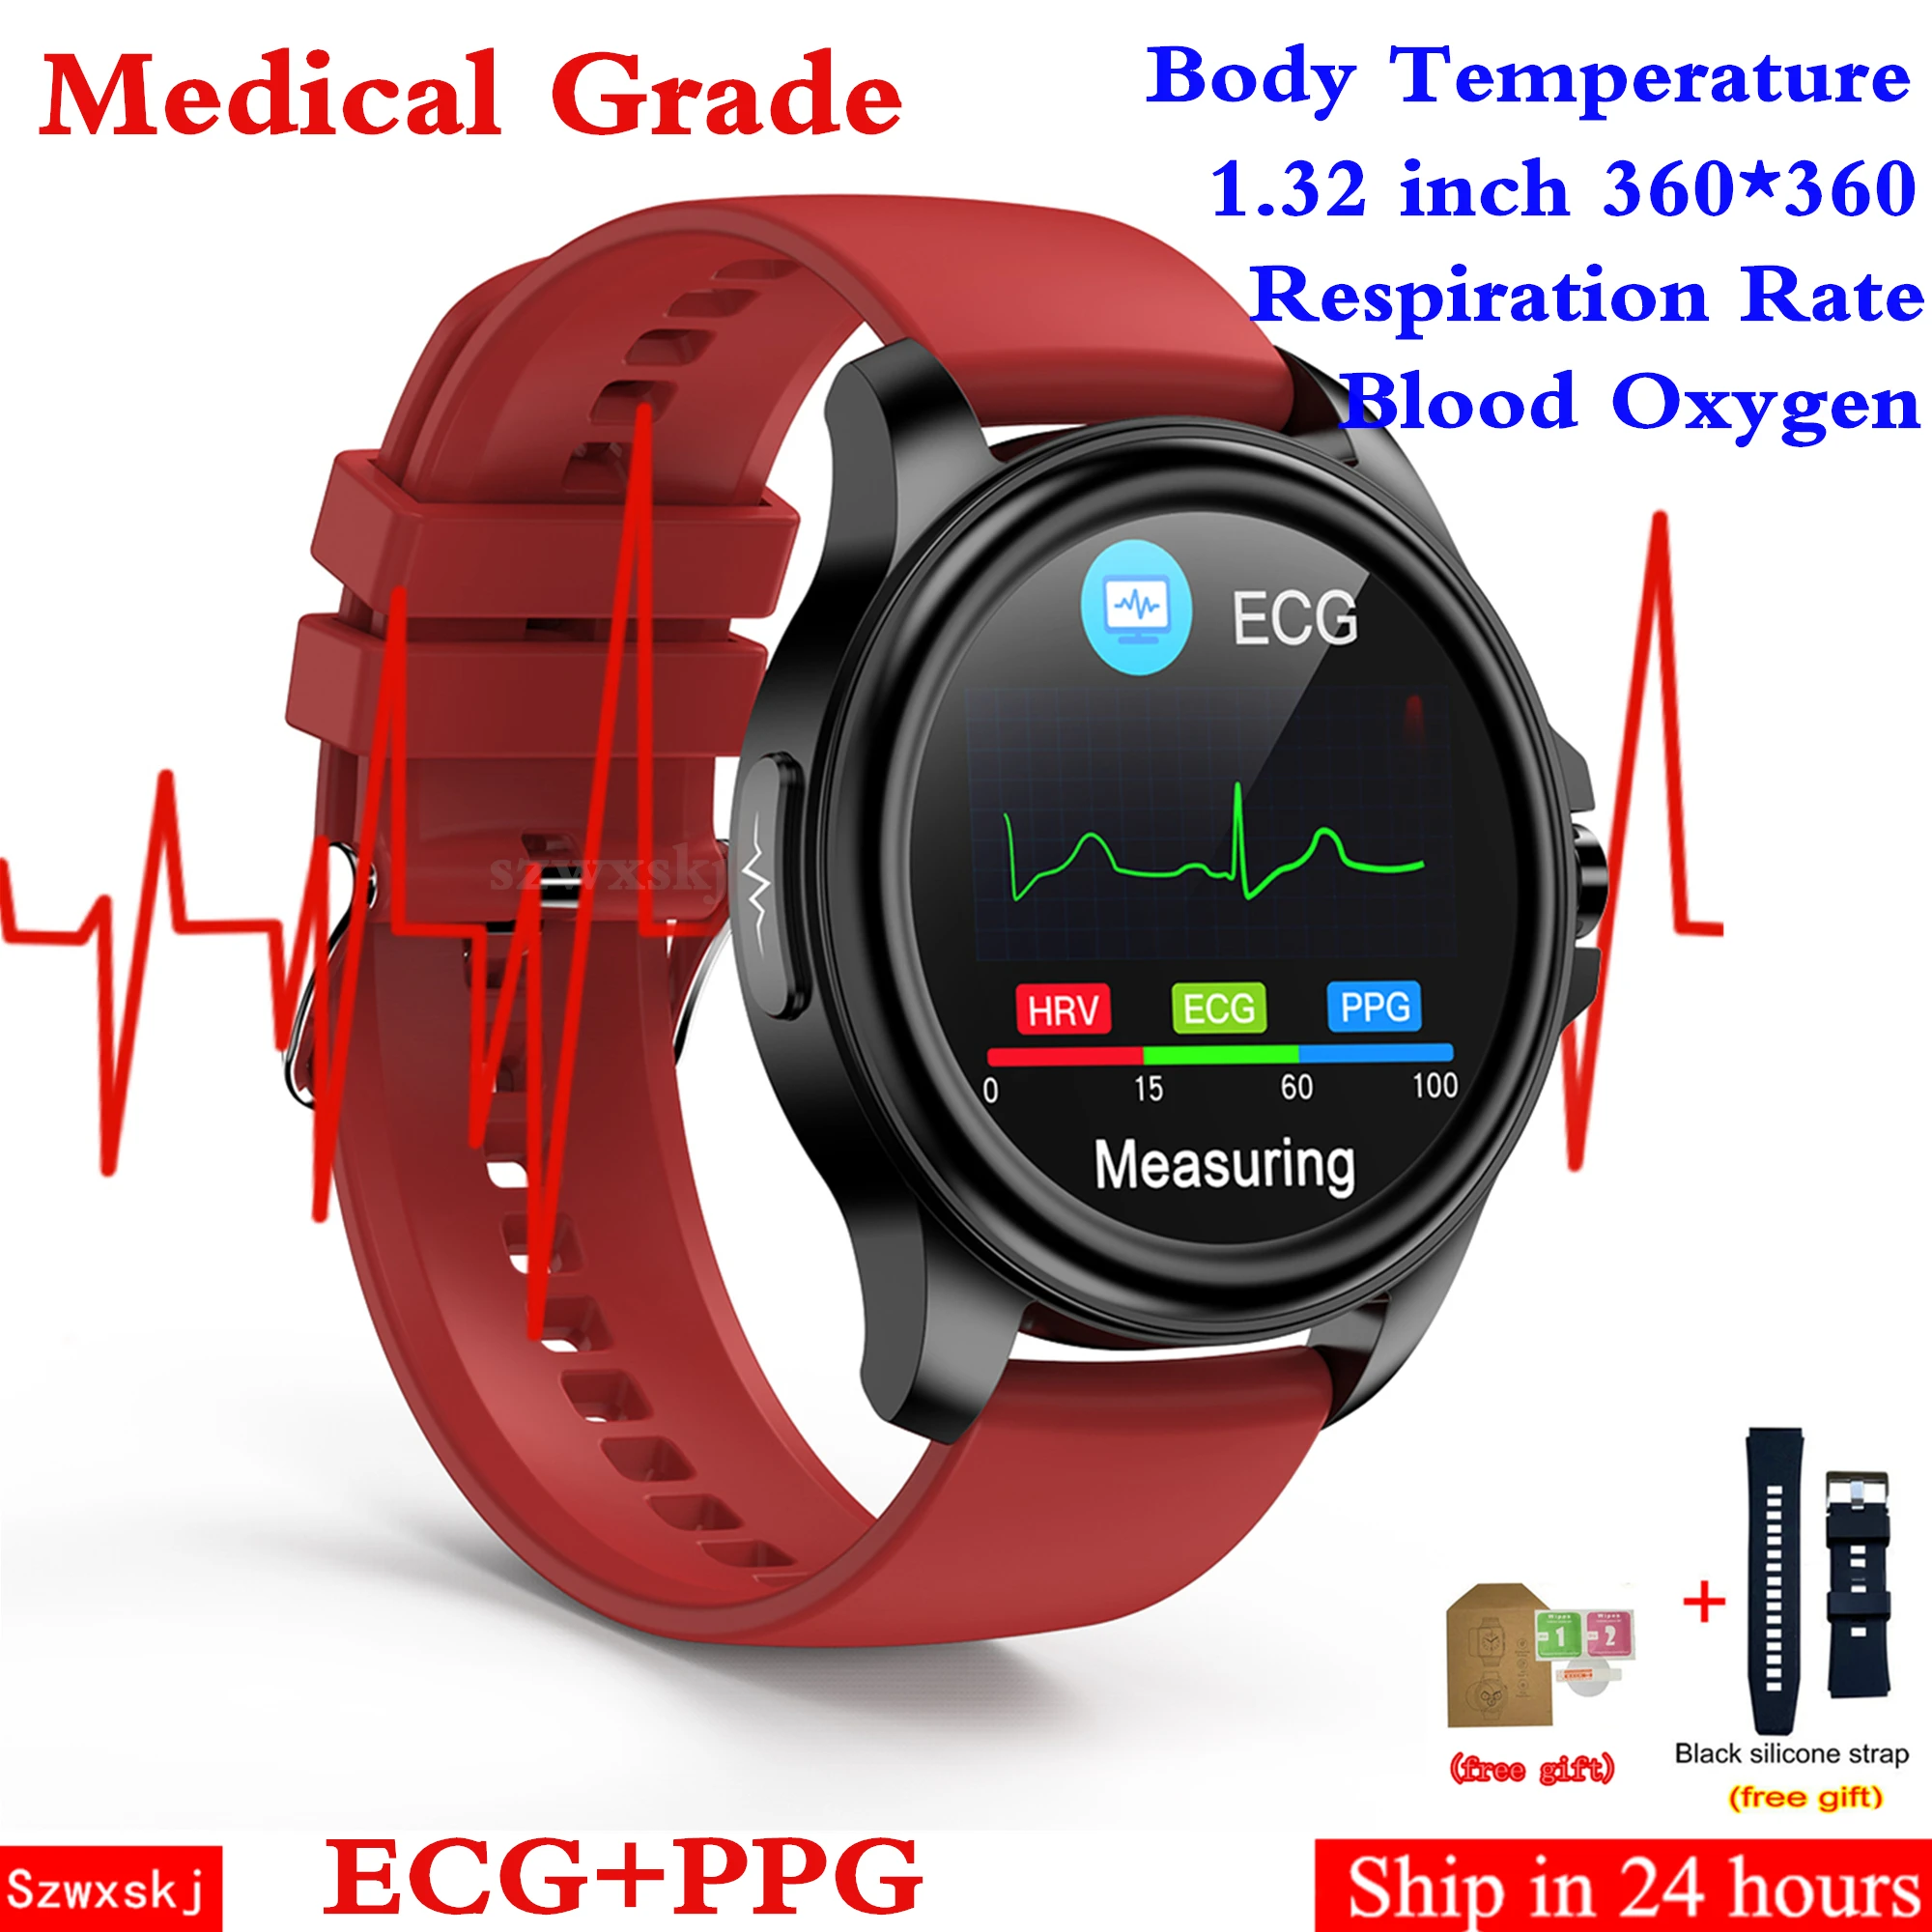 

Смарт-часы E89 для мужчин и женщин, AI Medical ECG PPG HRV, пульсометр, измерение температуры тела, артериального давления, водонепроницаемые IP68